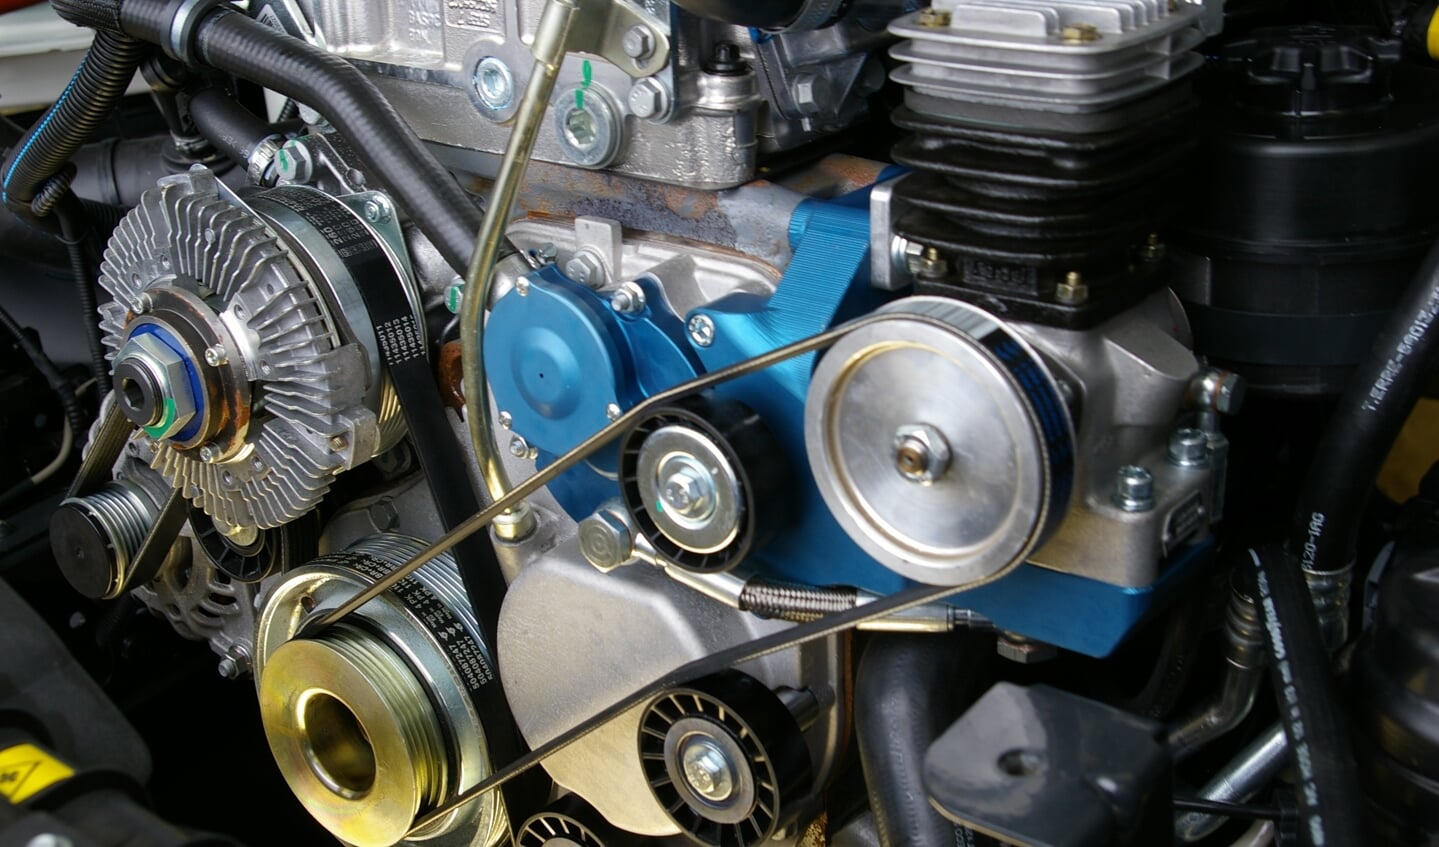 Bij het hier getoonde motorblok is duidelijk met de kleuren blauw, zilver en goud de luchtcompressor te zien die er door de firma Veldhuizen is ingebouwd om zo de bestelauto van luchtremmen te voorzien.